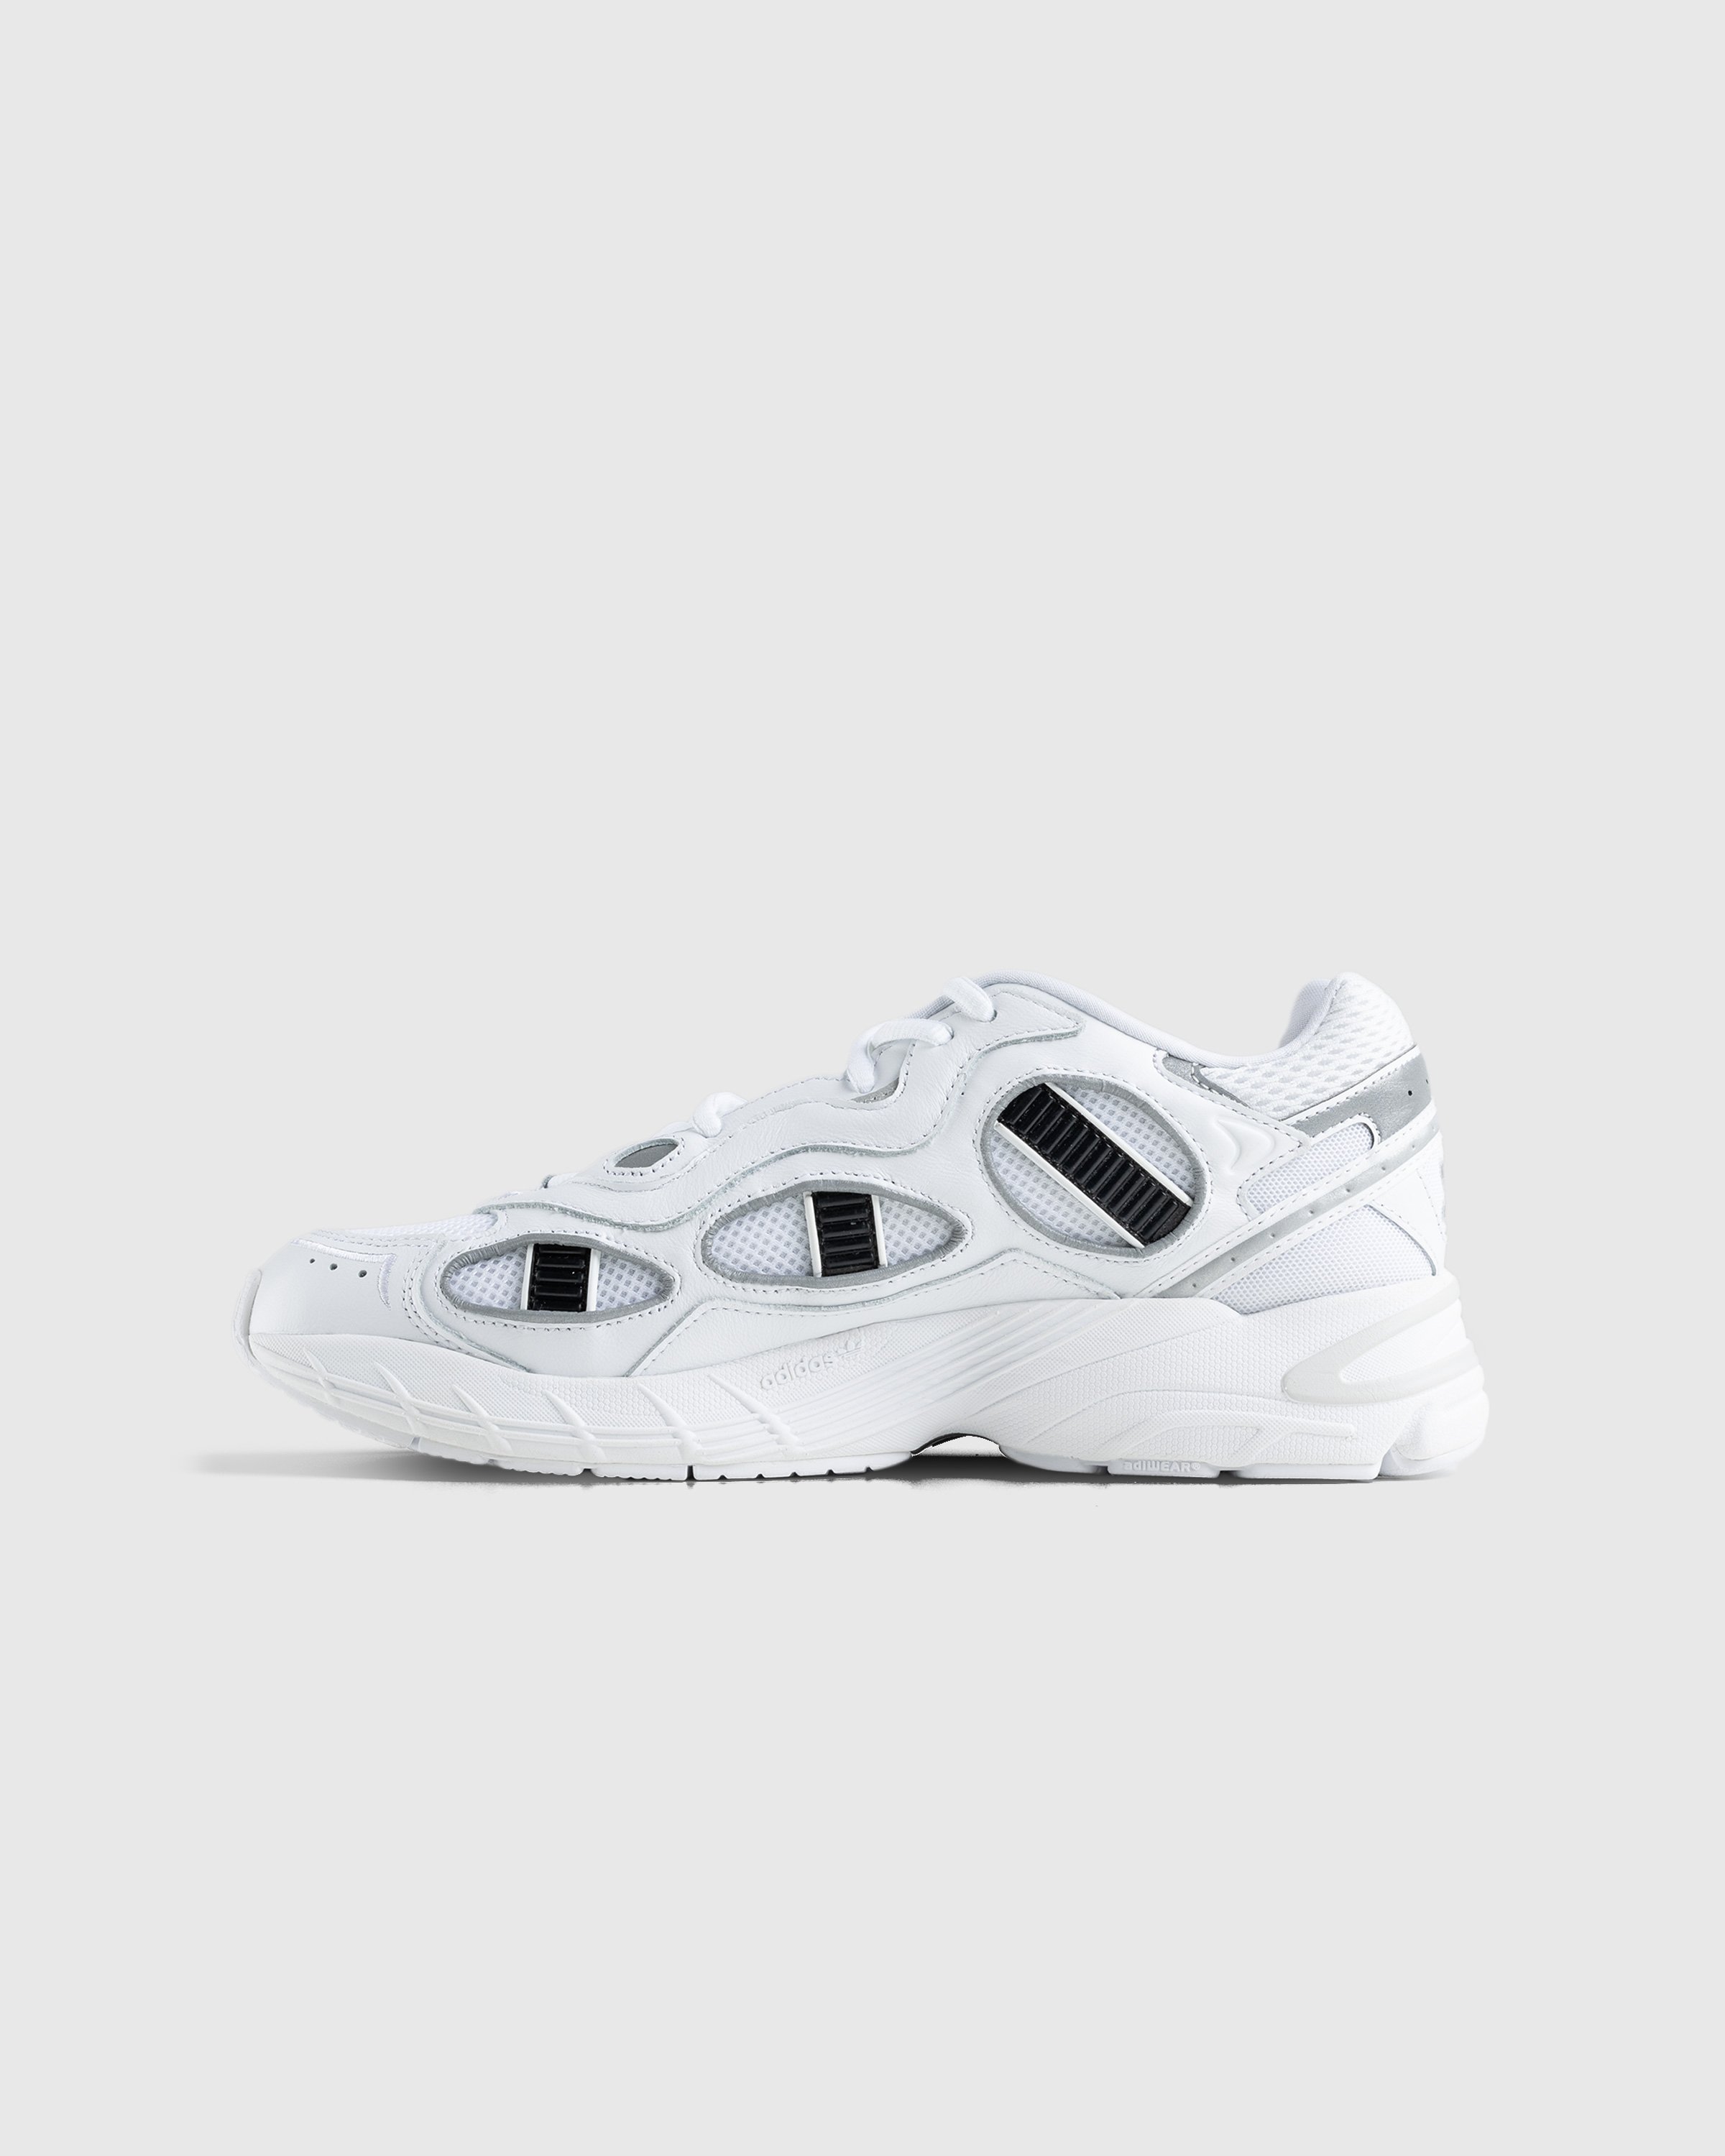 Adidas - Astir Sn White - Footwear - White - Image 2